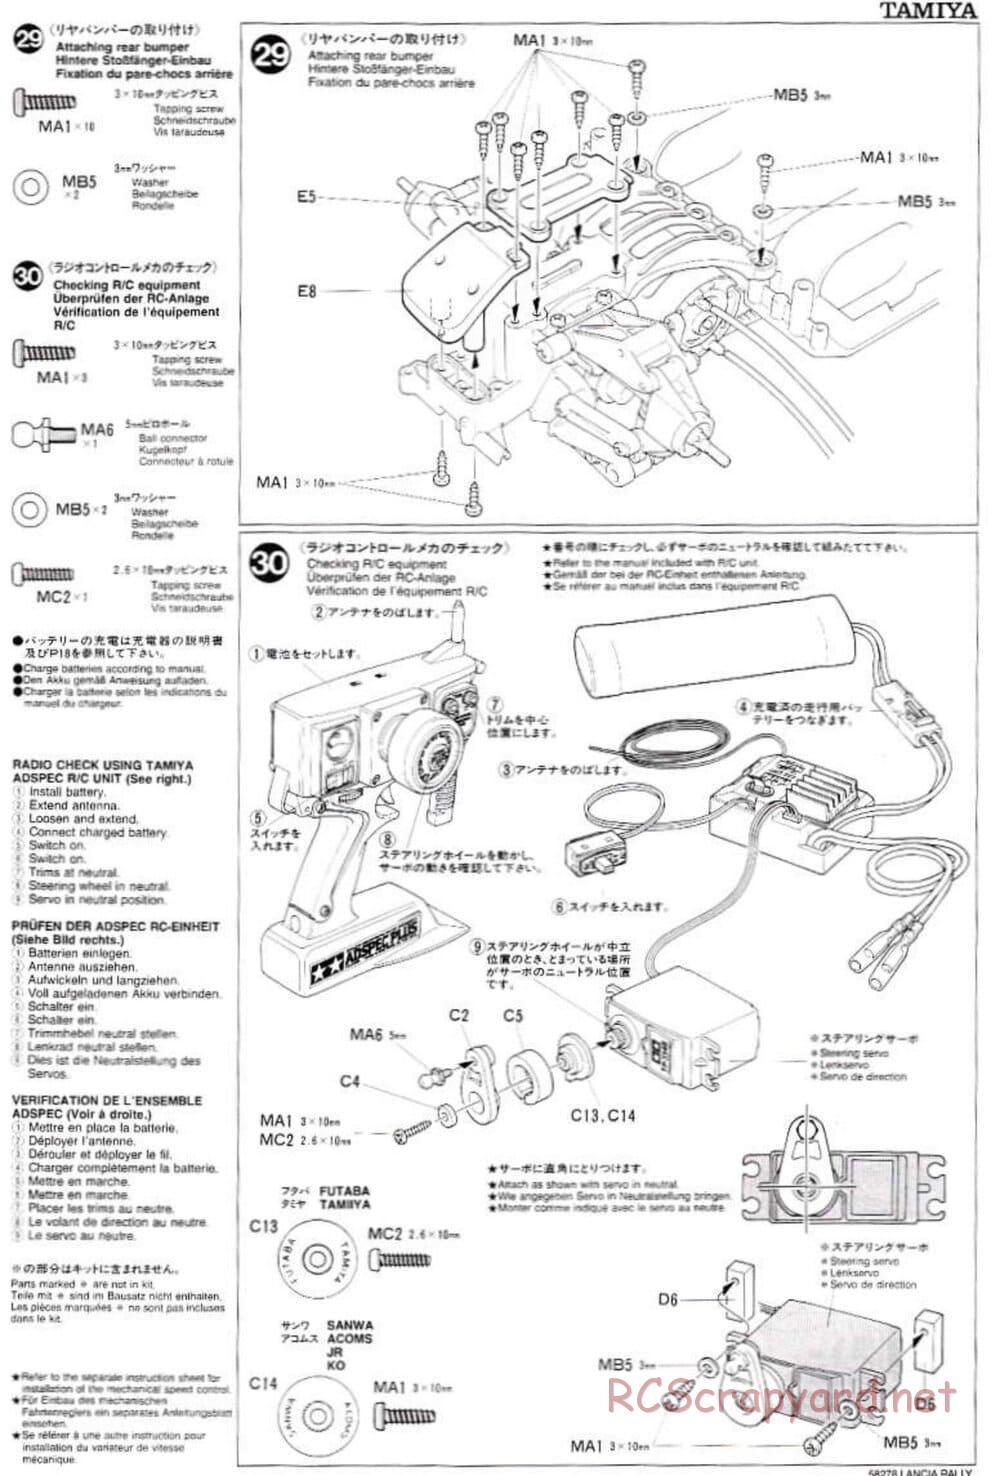 Tamiya - Lancia 037 Rally - TA-03RS Chassis - Manual - Page 15